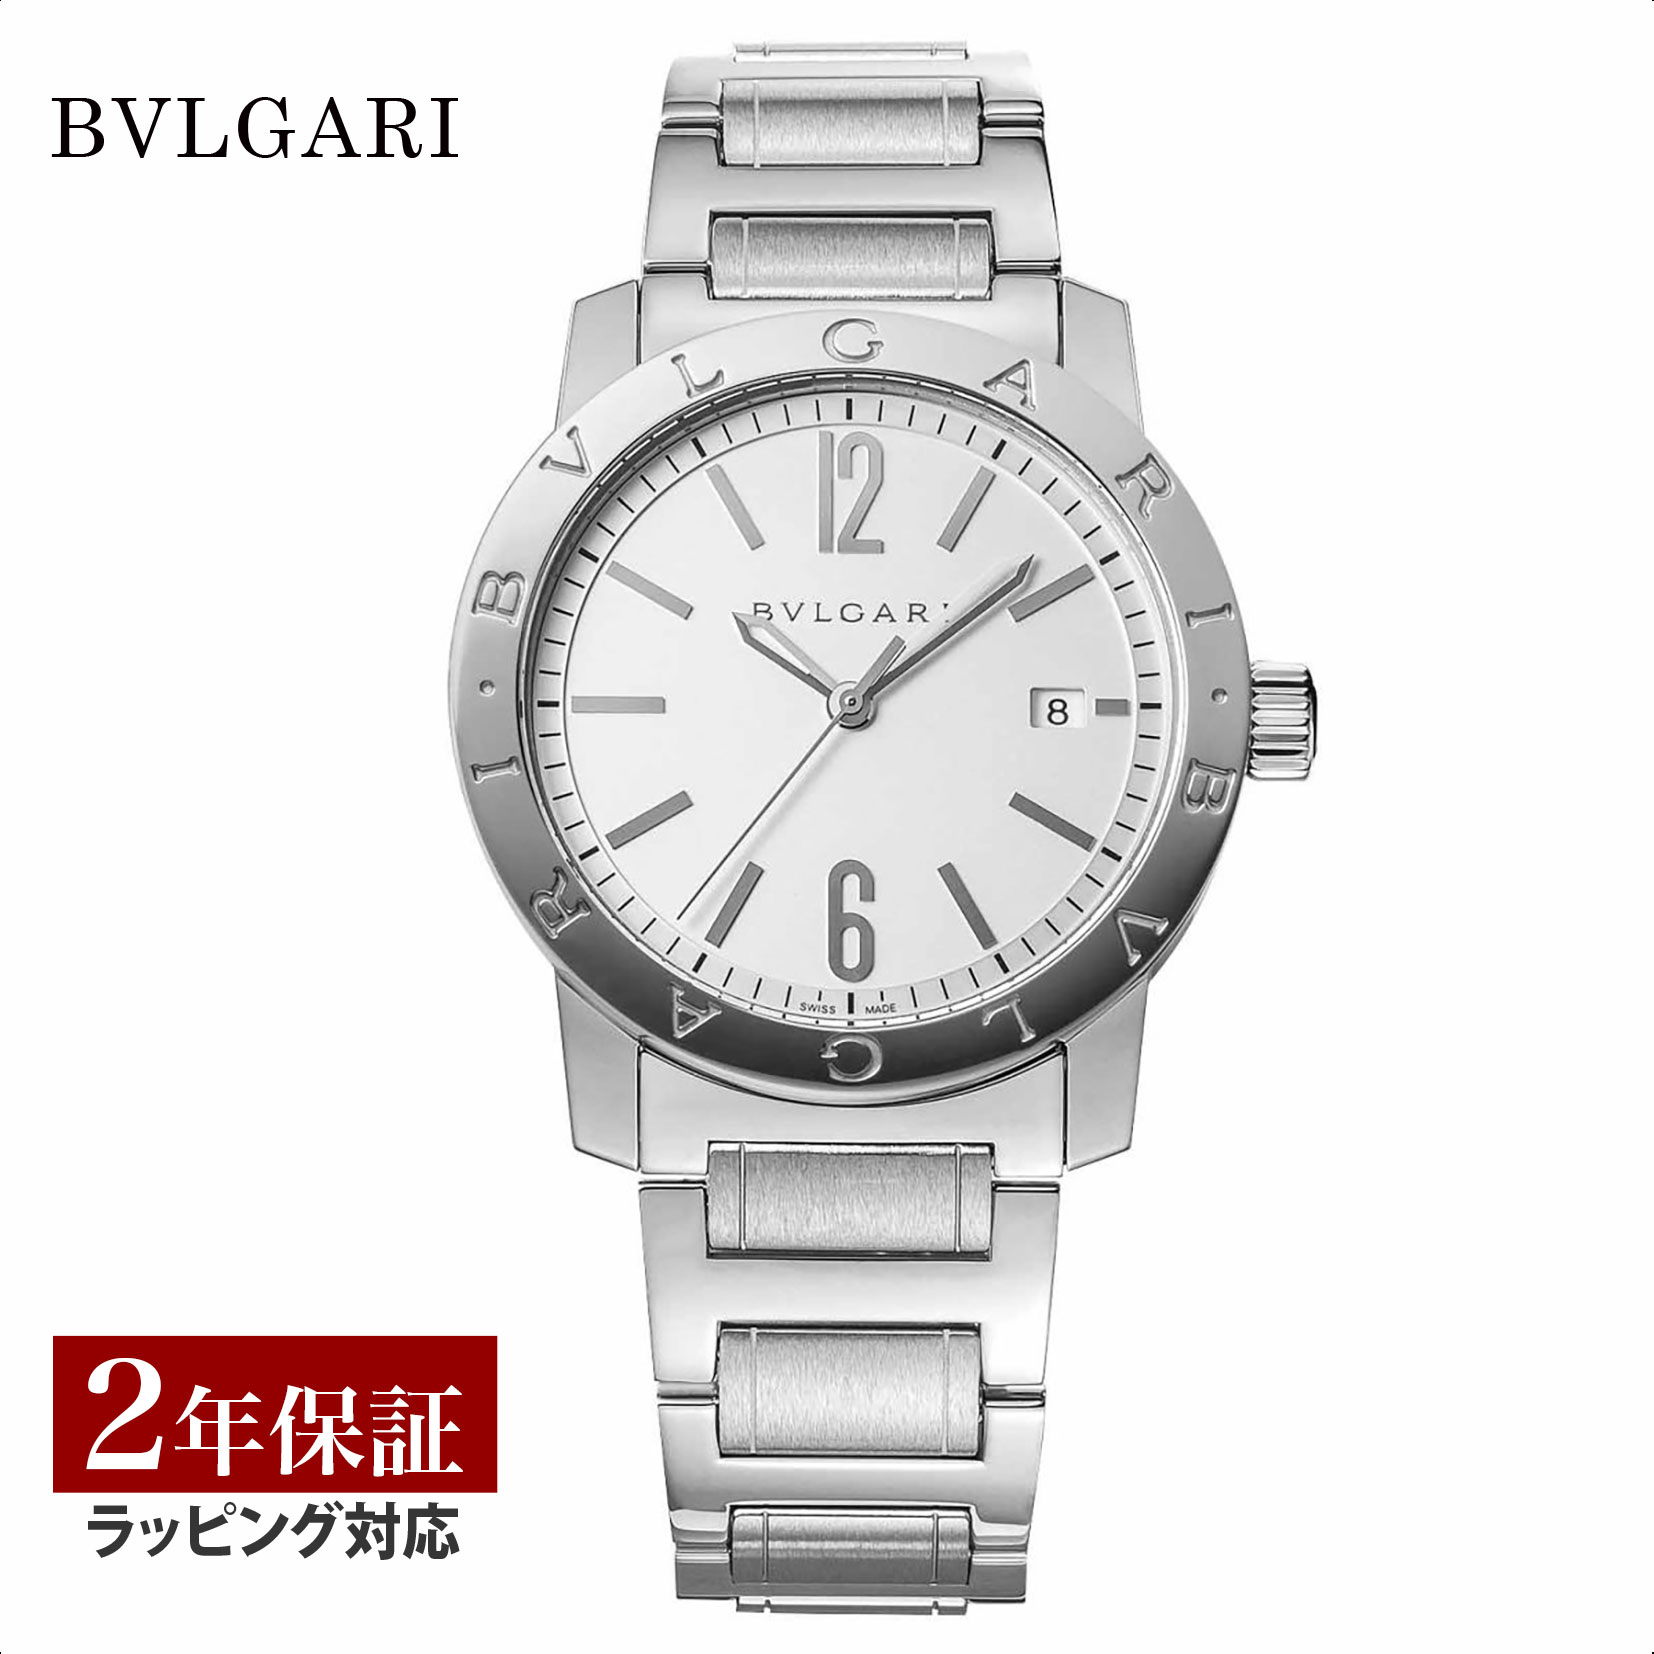 ブルガリブルガリ 腕時計（メンズ） 【レビューでブルガリランチ券】ブルガリ BVLGARI メンズ 時計 Bvlgari Bvlgari ブルガリブルガリ 自動巻 ホワイト BB39WSSD 時計 腕時計 高級腕時計 ブランド 【ローン金利無料】